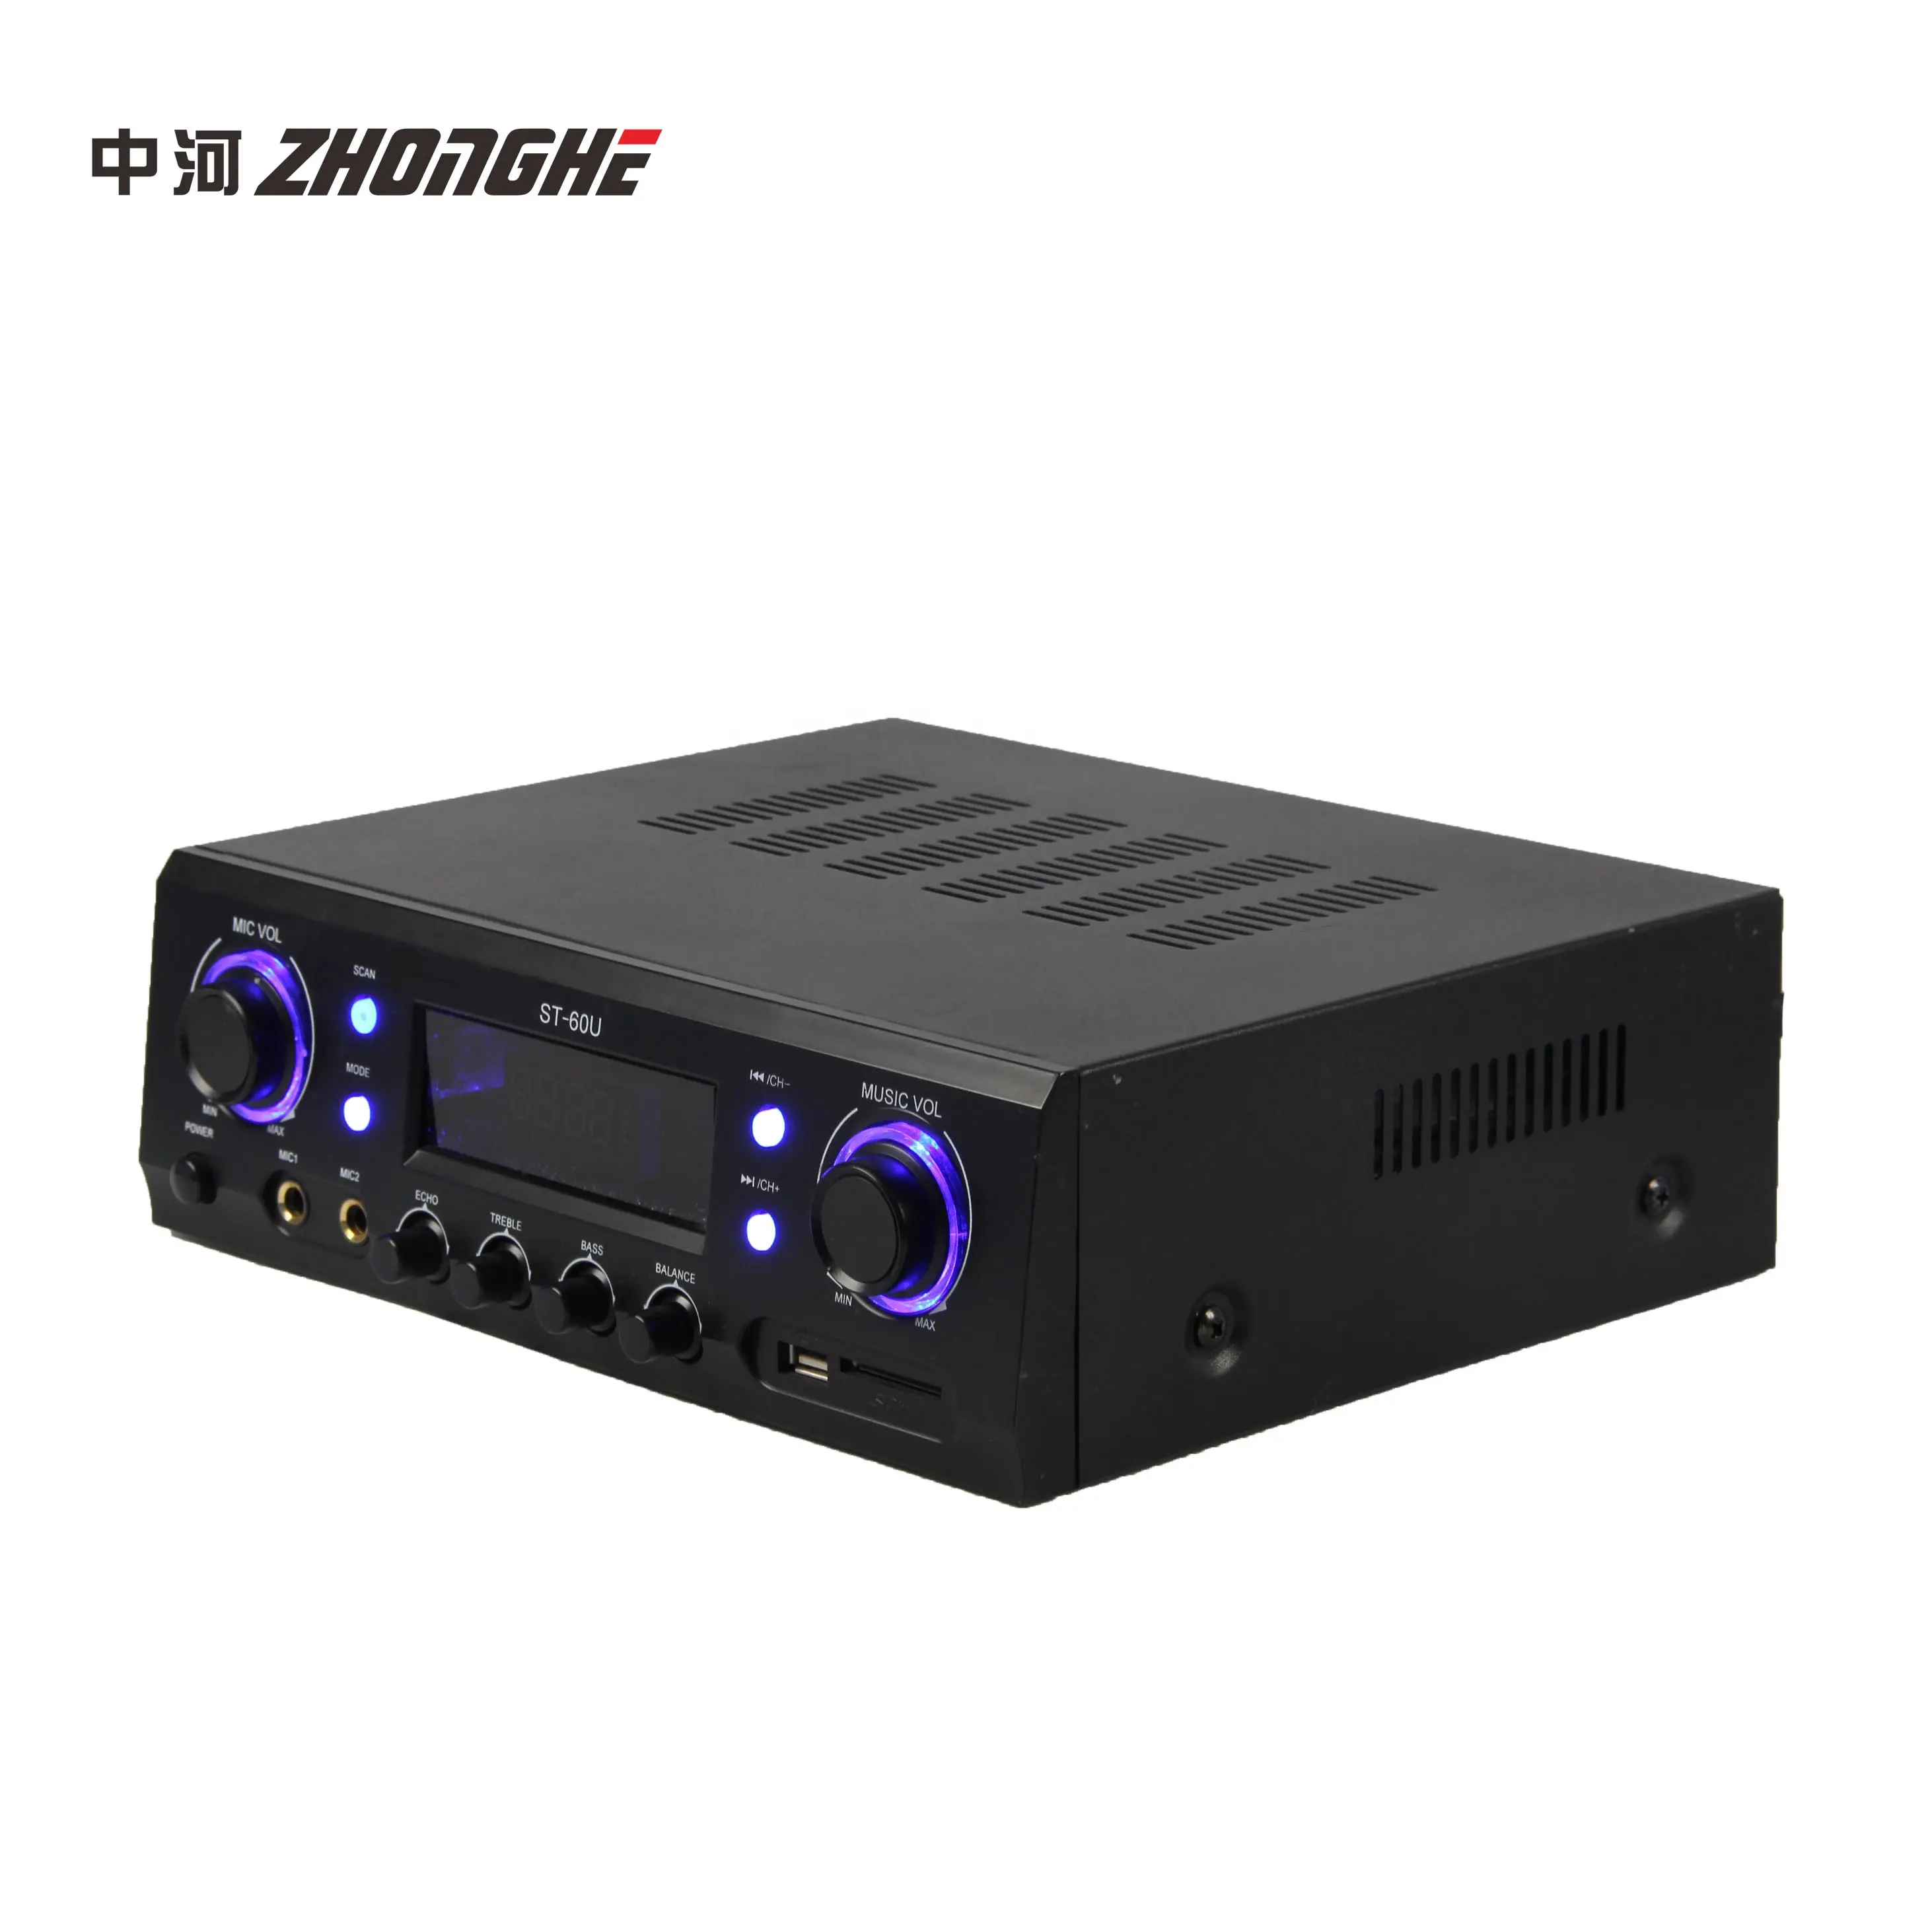 Cheap Price Digital Amplifier with BT ECHO Function Karaoke Mixing Amplifier used in Karaoke Home Market